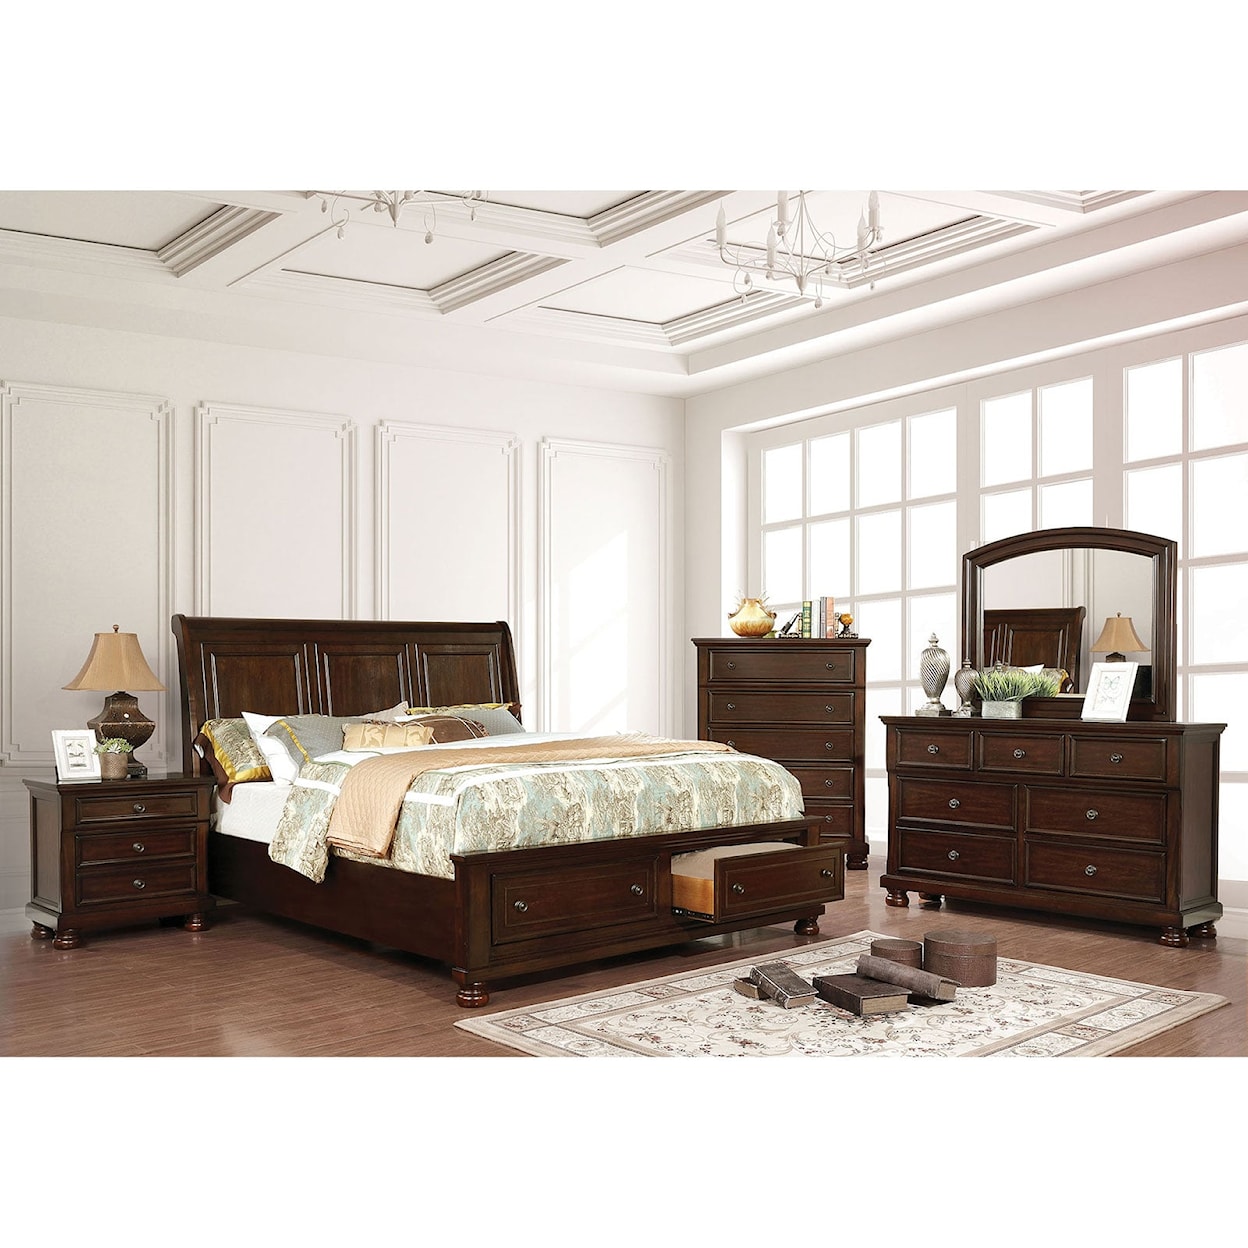 Furniture of America Castor 4 Pc. Queen Bedroom Set